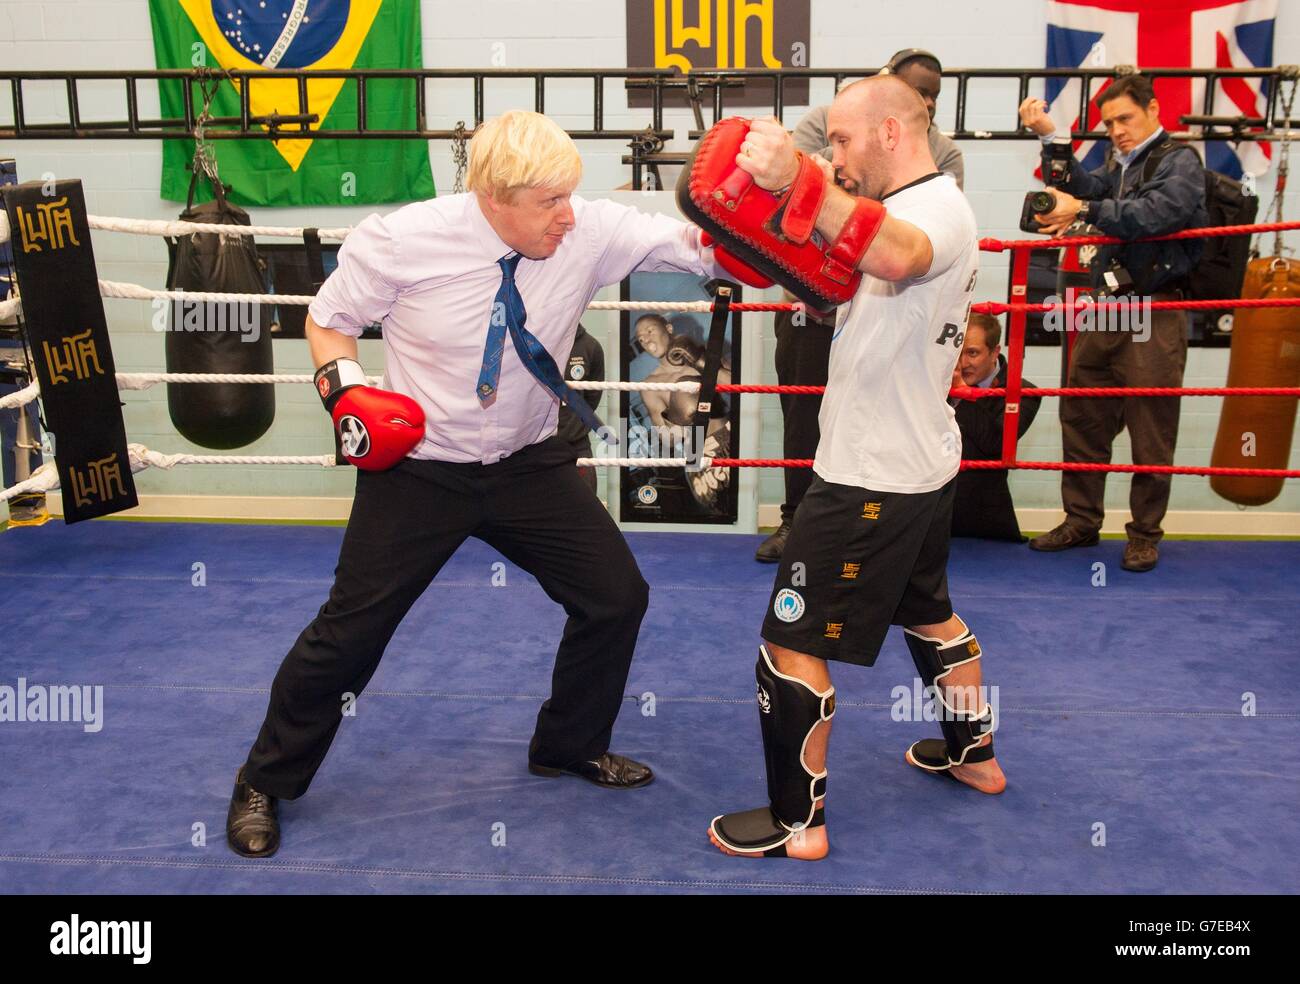 Il sindaco di Londra Boris Johnson partecipa a una sessione di pugilato durante una visita all'accademia di pugilato lotta per la pace, che lavora con i giovani a rischio di criminalità e violenza a North Woolwich, a est di Londra. Foto Stock